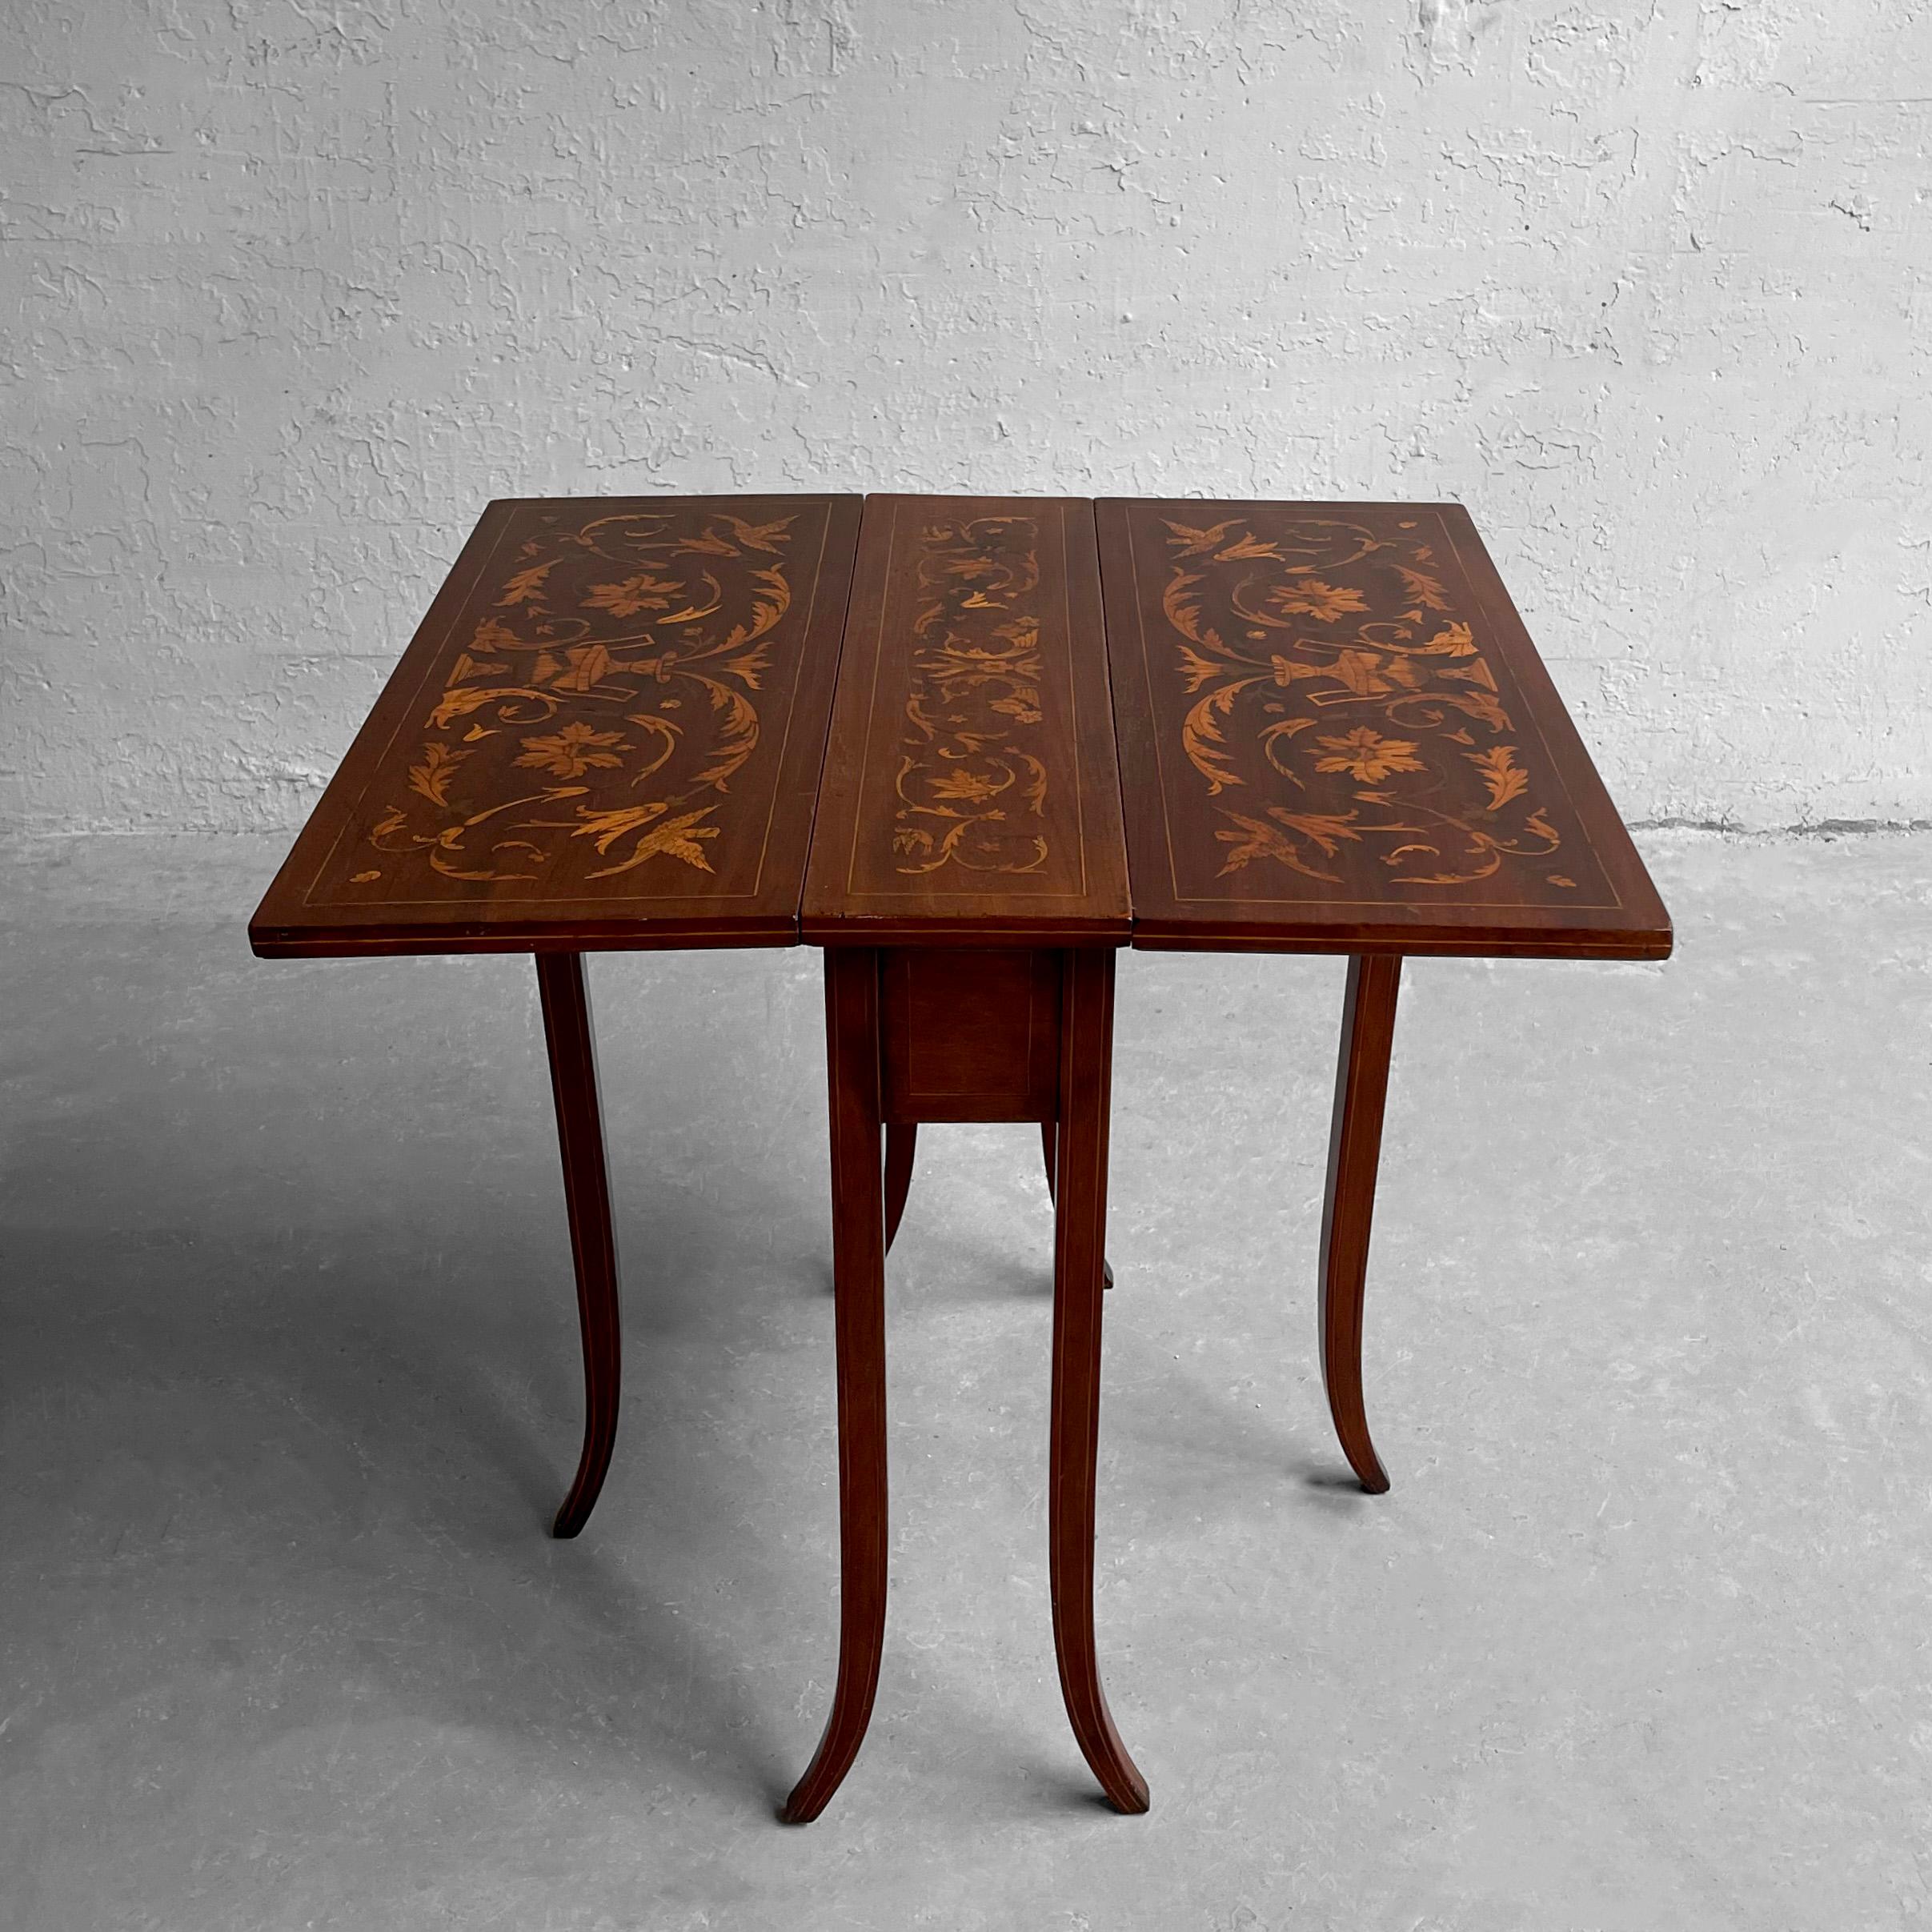 Beistelltisch aus Mahagoni im englischen Regency-Stil mit Klappdeckel, symmetrischer Intarsienarbeit, Buchsbaumholzeinlagen und wunderschön geschwungenen Säbelbeinen. Der Tisch ist von 7,5 bis 26 Zoll tief und verfügt über eine Schublade zur